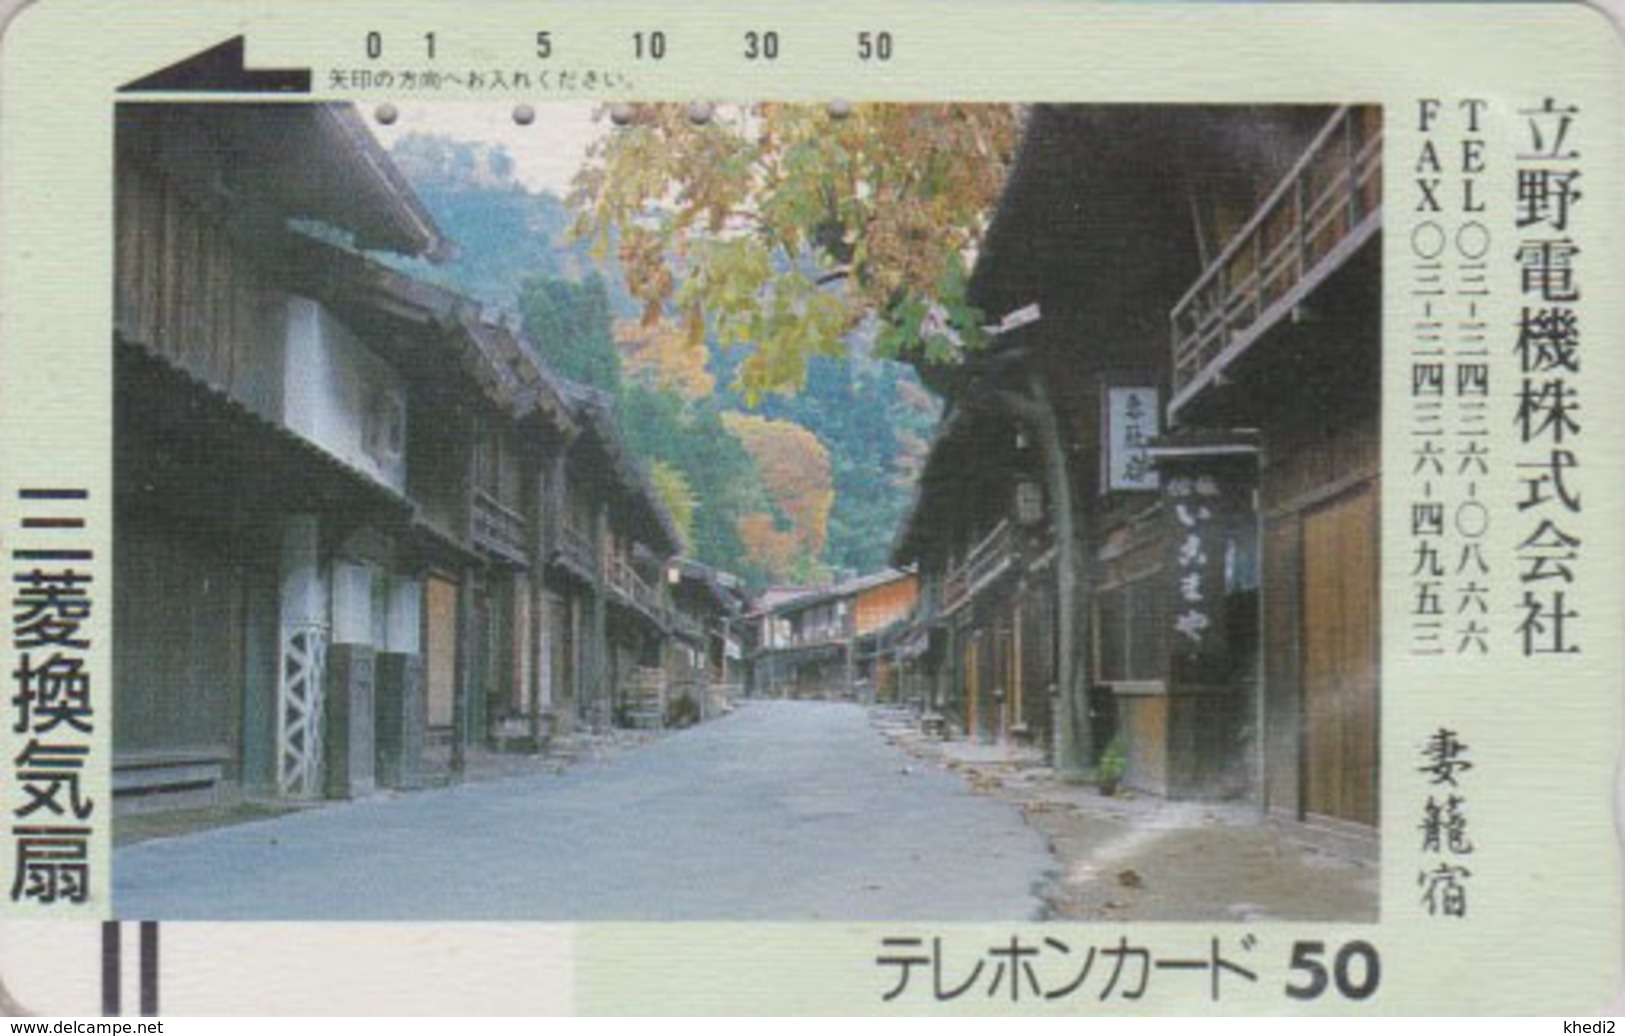 Télécarte Ancienne Japon / 110-3386 - Paysage - Rue & Maisons En Bois - Japan Front Bar Phonecard / B2 - Japan